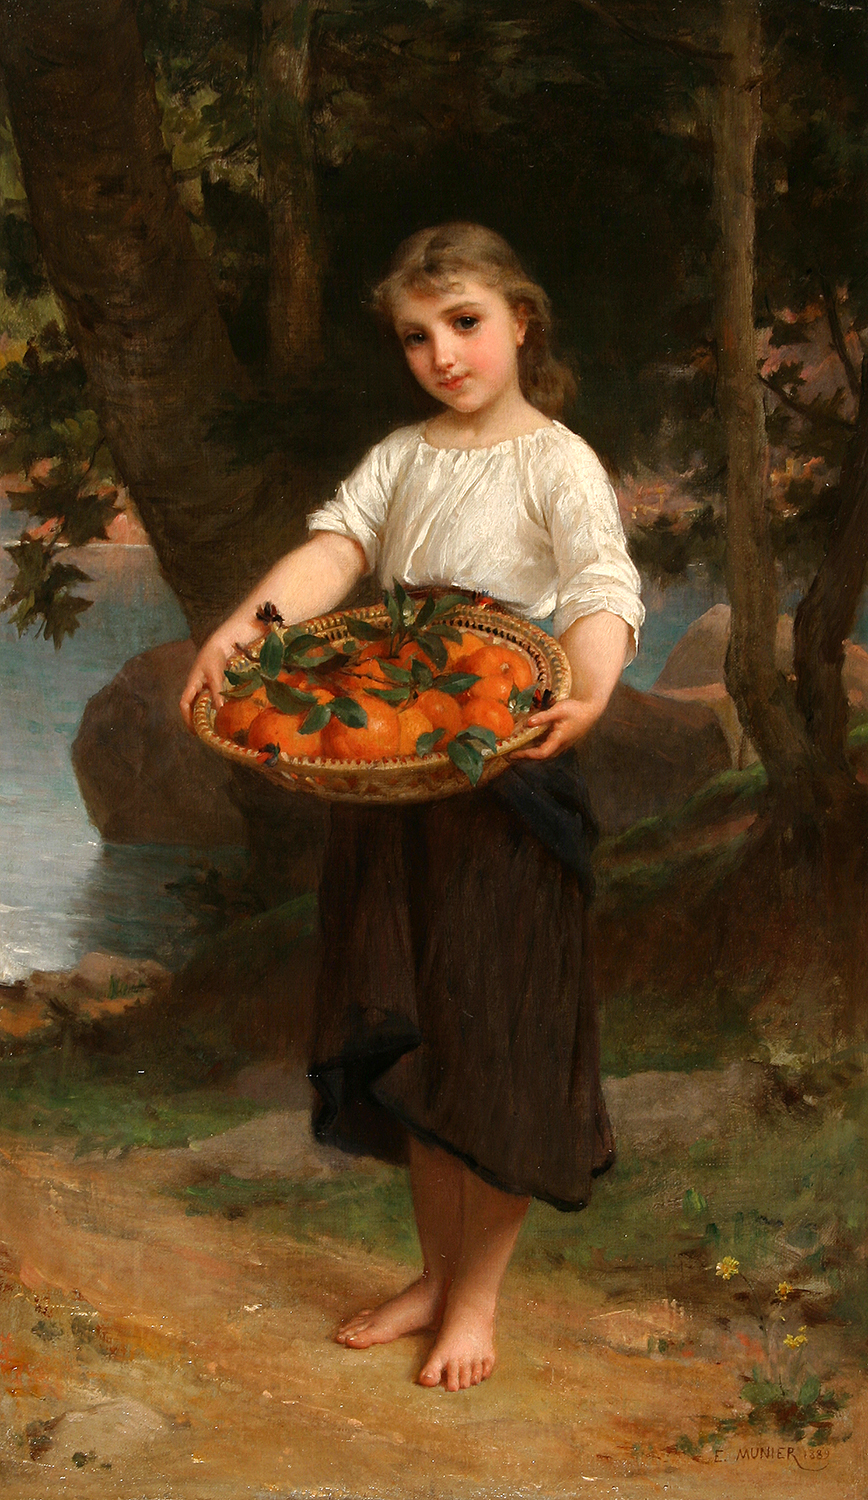 A girl holing a basket of oranges - Girl with Basket of Oranges - Emile Munier